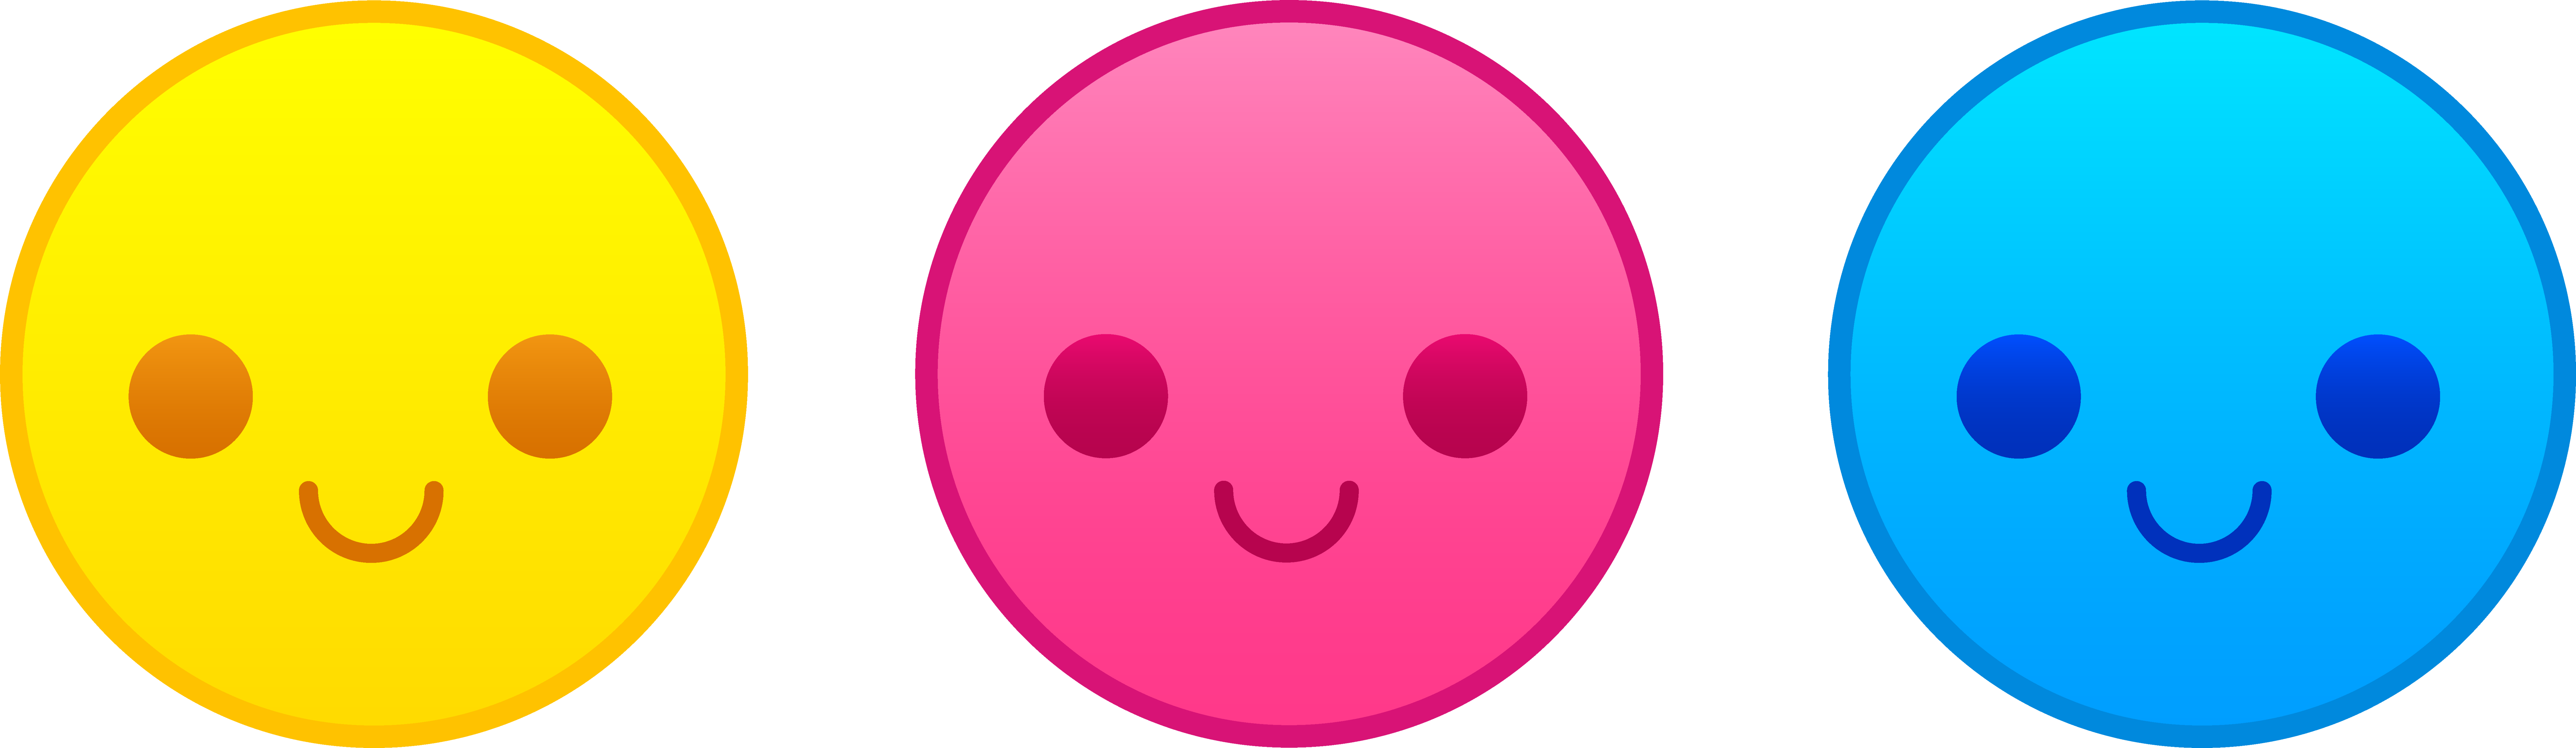 Happy Faces Clip Art Pink - ClipArt Best - Cute Smiley Face Clip Art